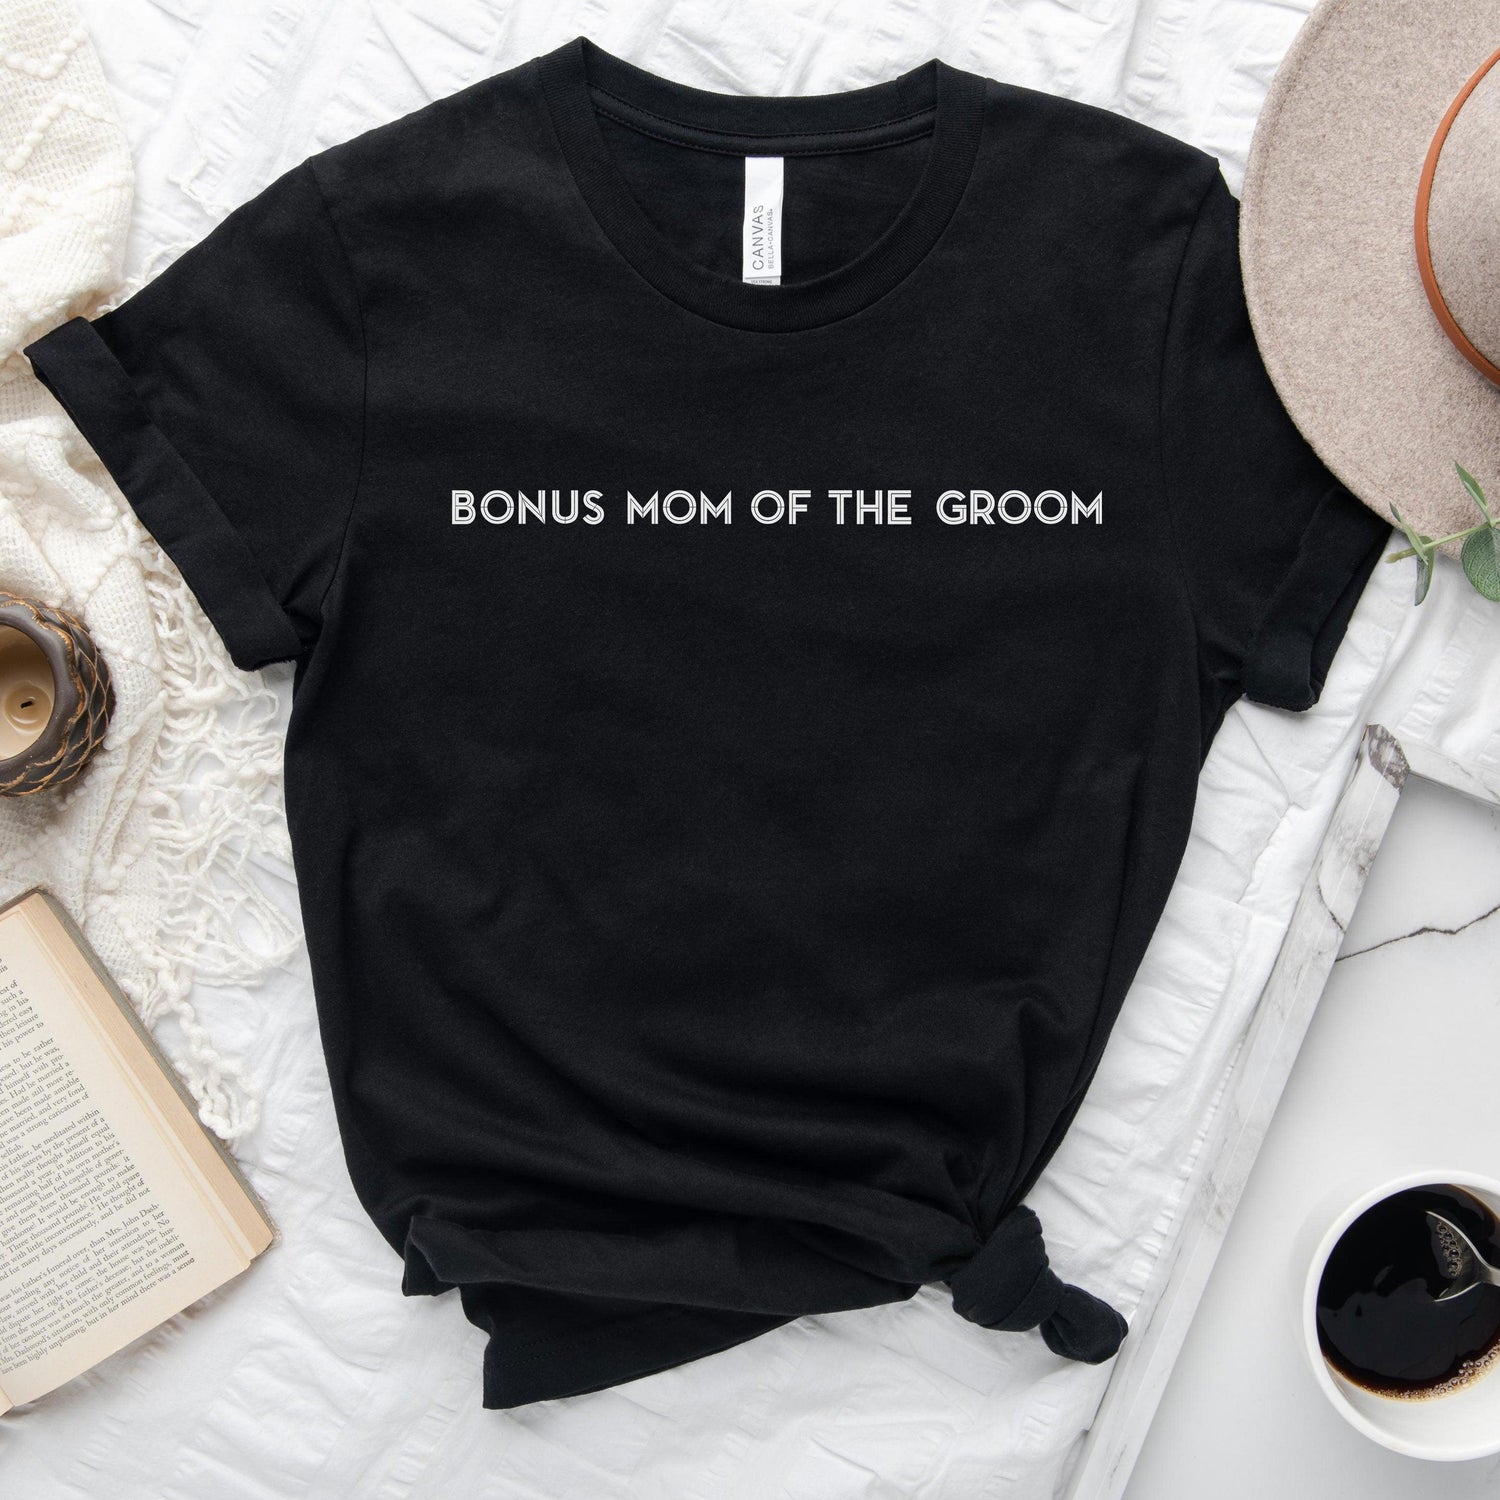 Bonus Mom of the Groom Shirt - Matching Wedding Party tshirts - Unisex t-shirt by Oaklynn Lane - Black Tee